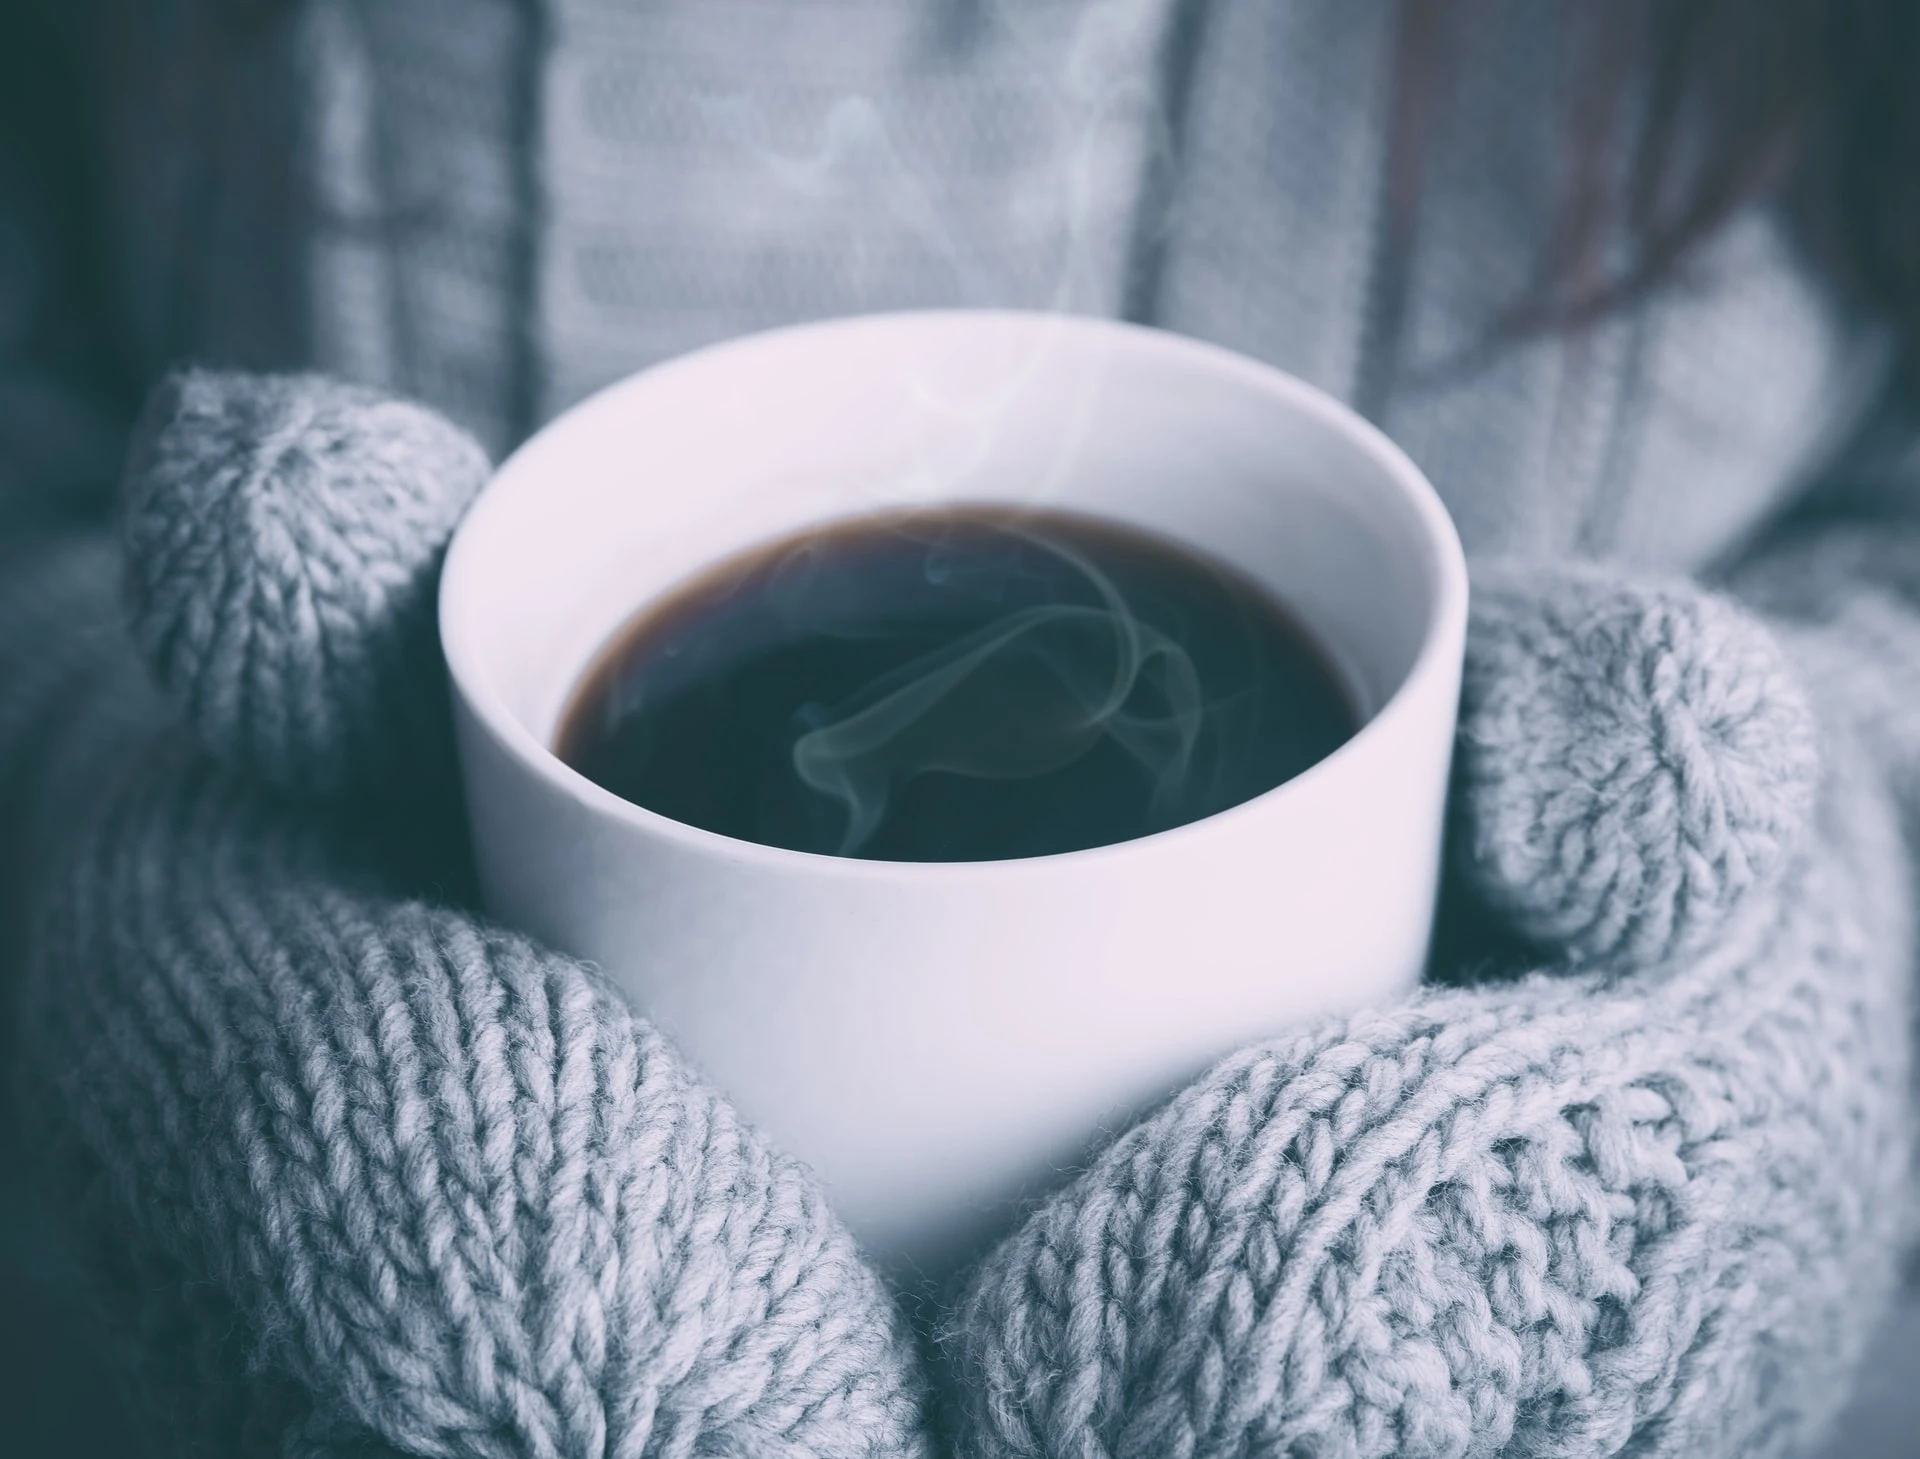 Prehlada ili grip - kako da ih razlikujete?